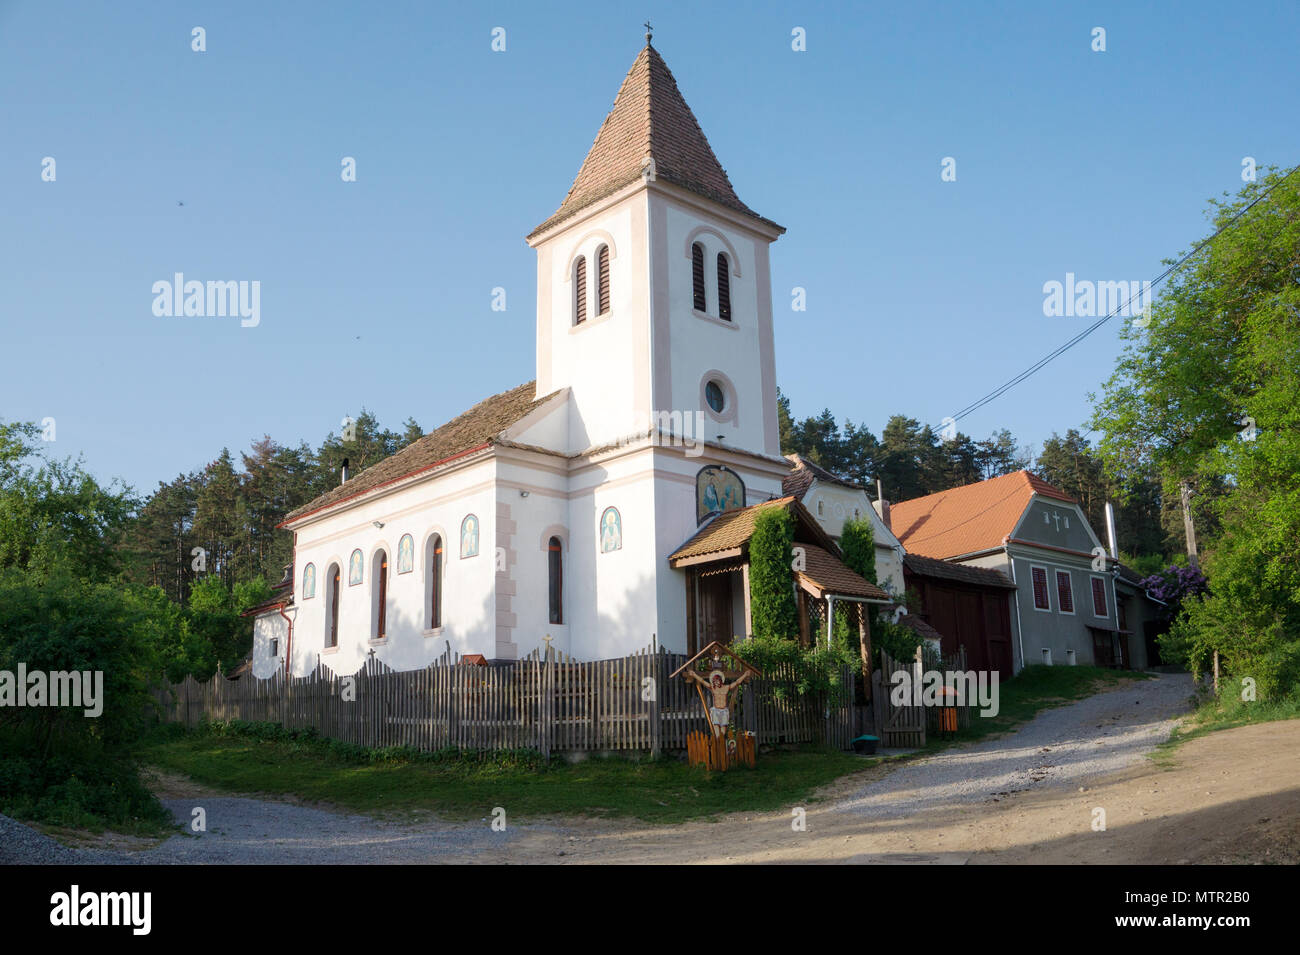 Scenic view of small church in UNESCO Heritage site Viscri with historical Saxon architecture Transilvania Romania Stock Photo